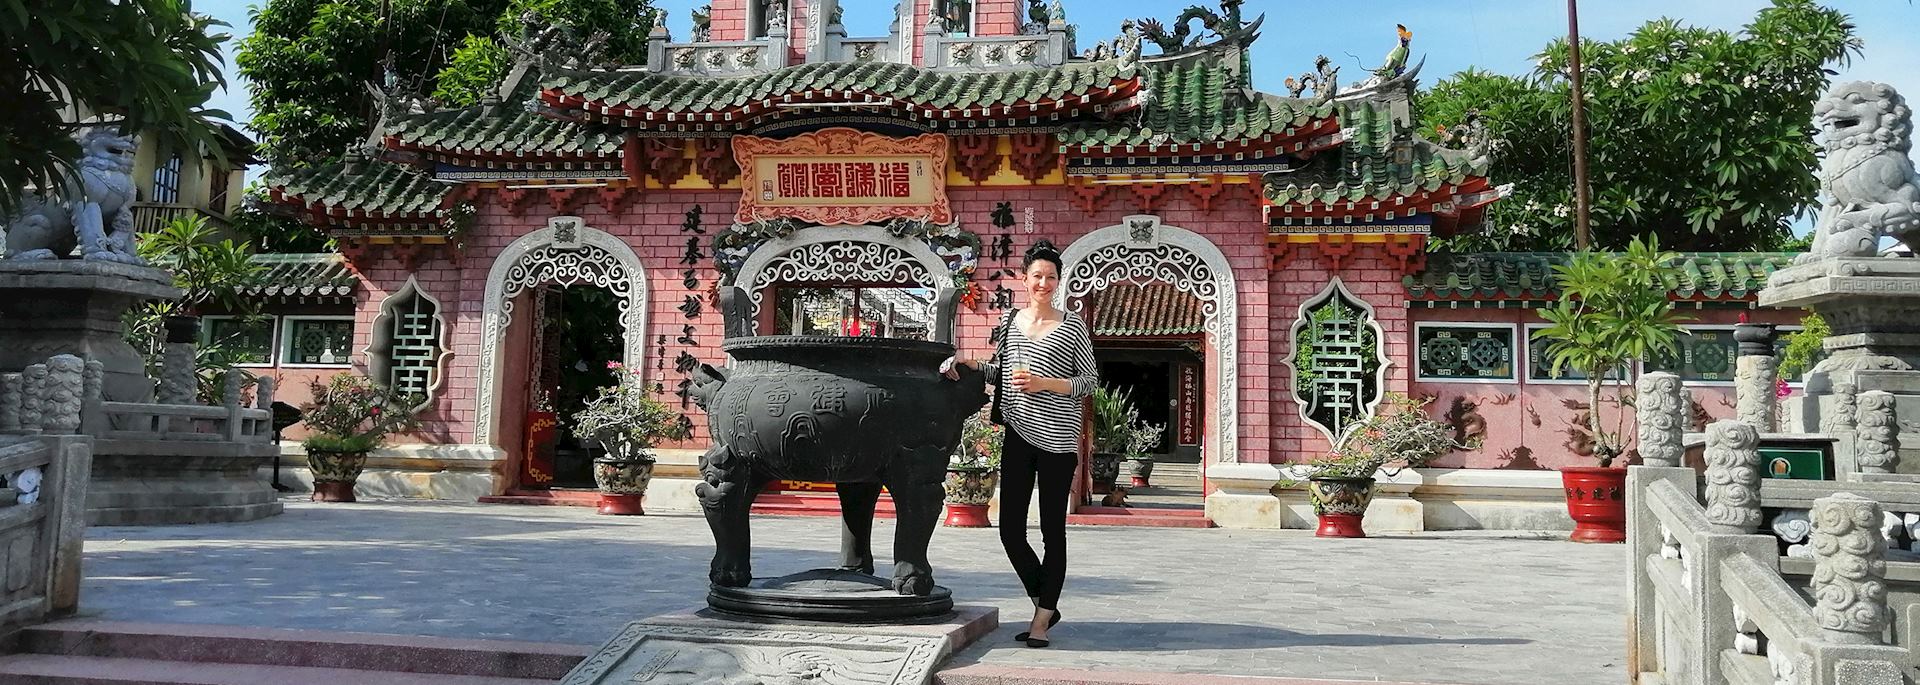 Louisa at Quan Cong Temple, Hoi An, Vietnam